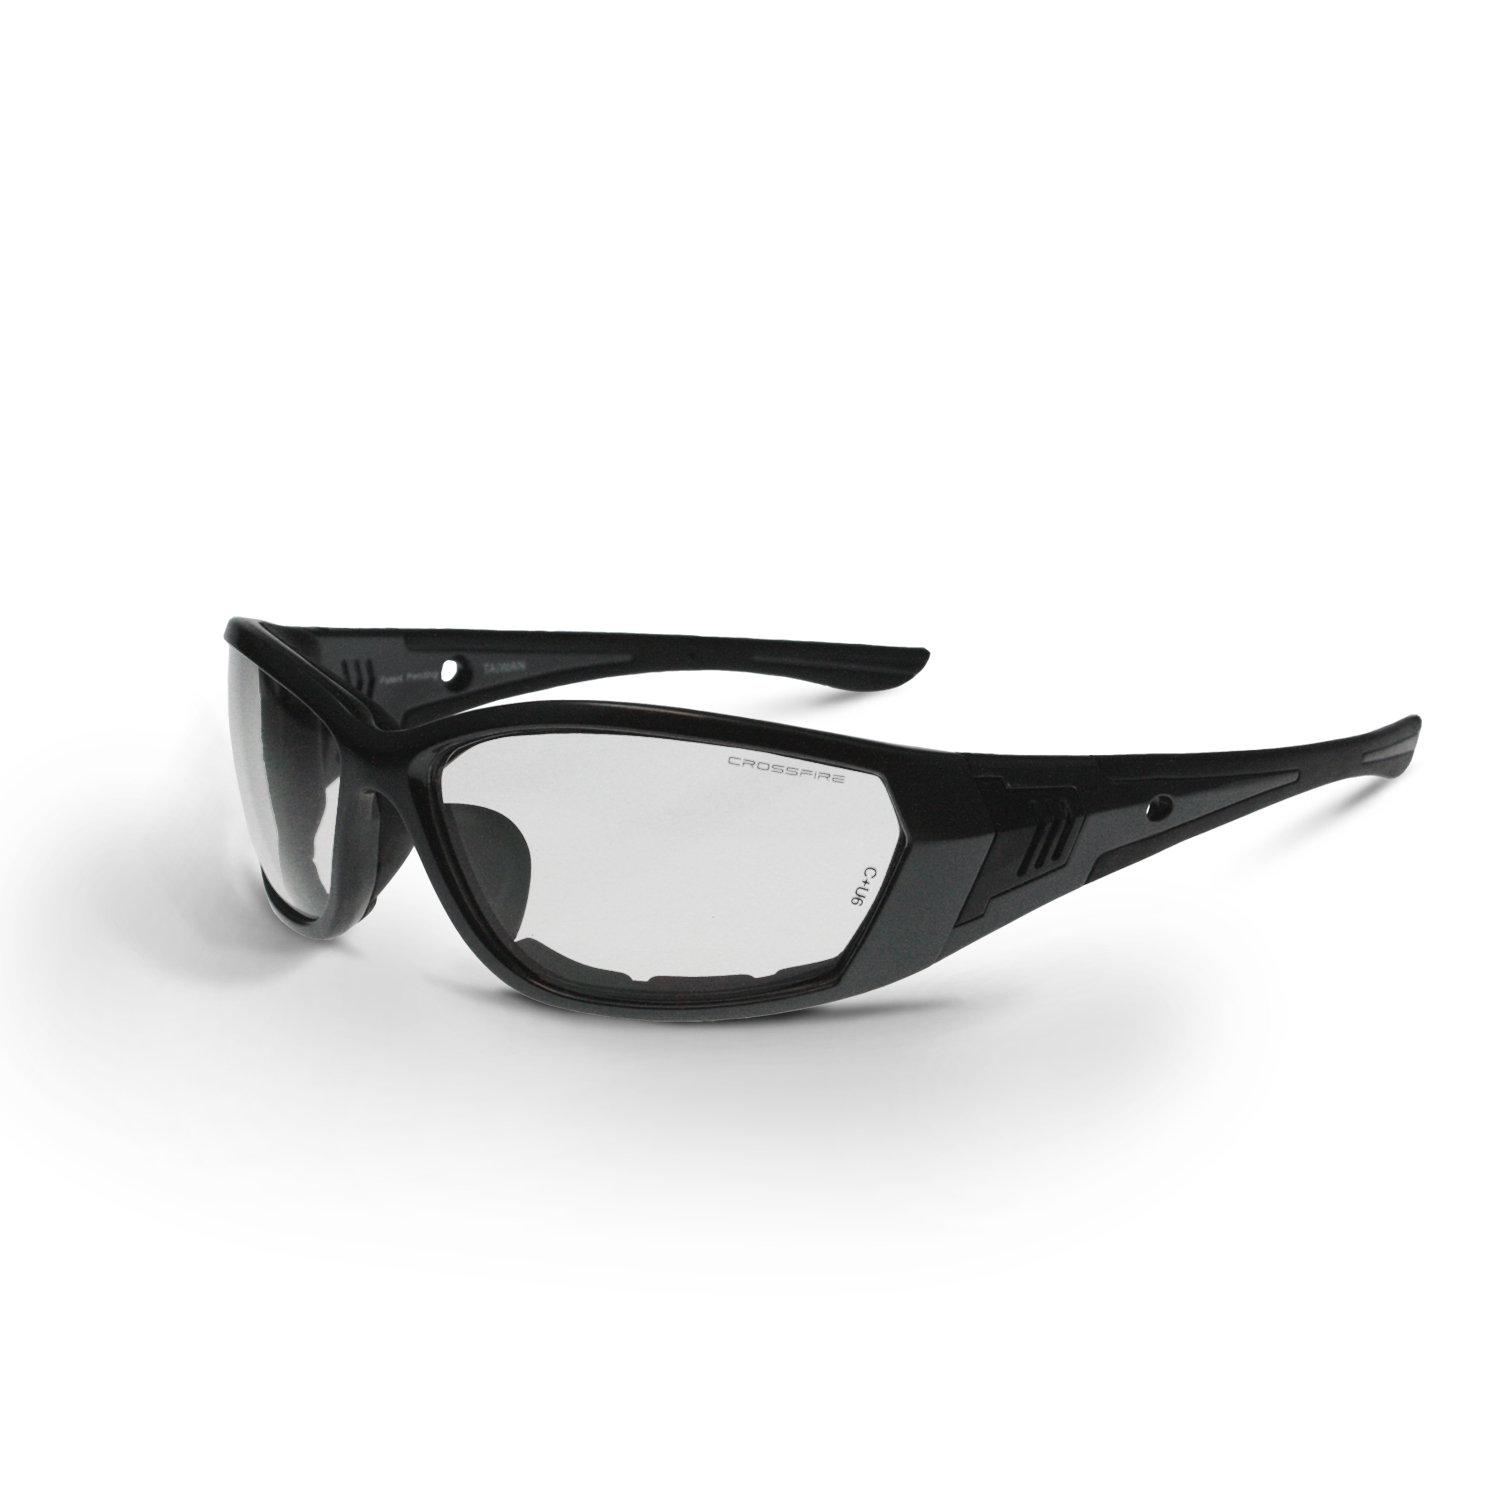 710 Foam Lined Safety Eyewear - Pearl Gray Frame - Clear Anti-Fog Lens - Anti-Fog Lens